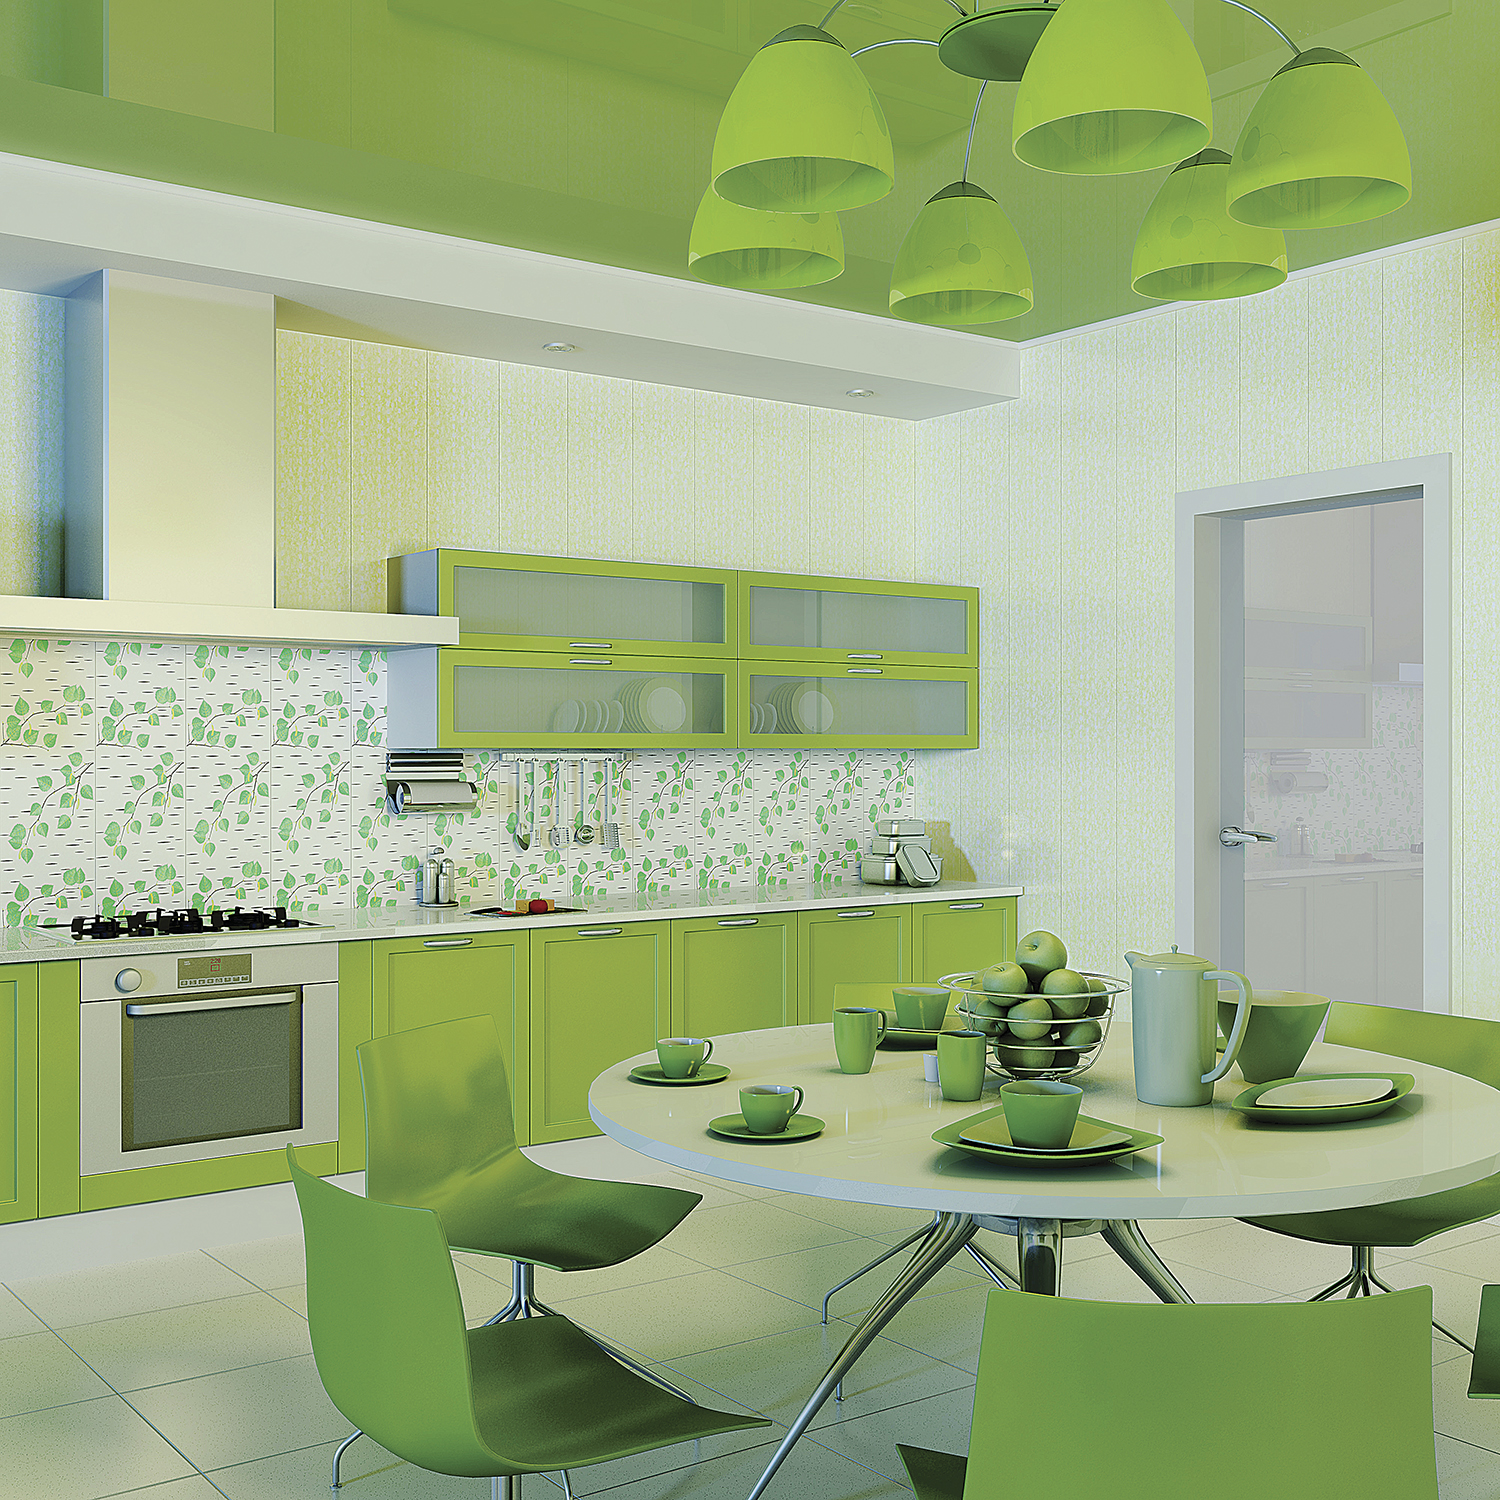 Дизайн кухни с панелями. Кухни салатовые. Кухня в зеленых тонах. Кухня в салатовых тонах. Кухня зеленого цвета в интерьере.